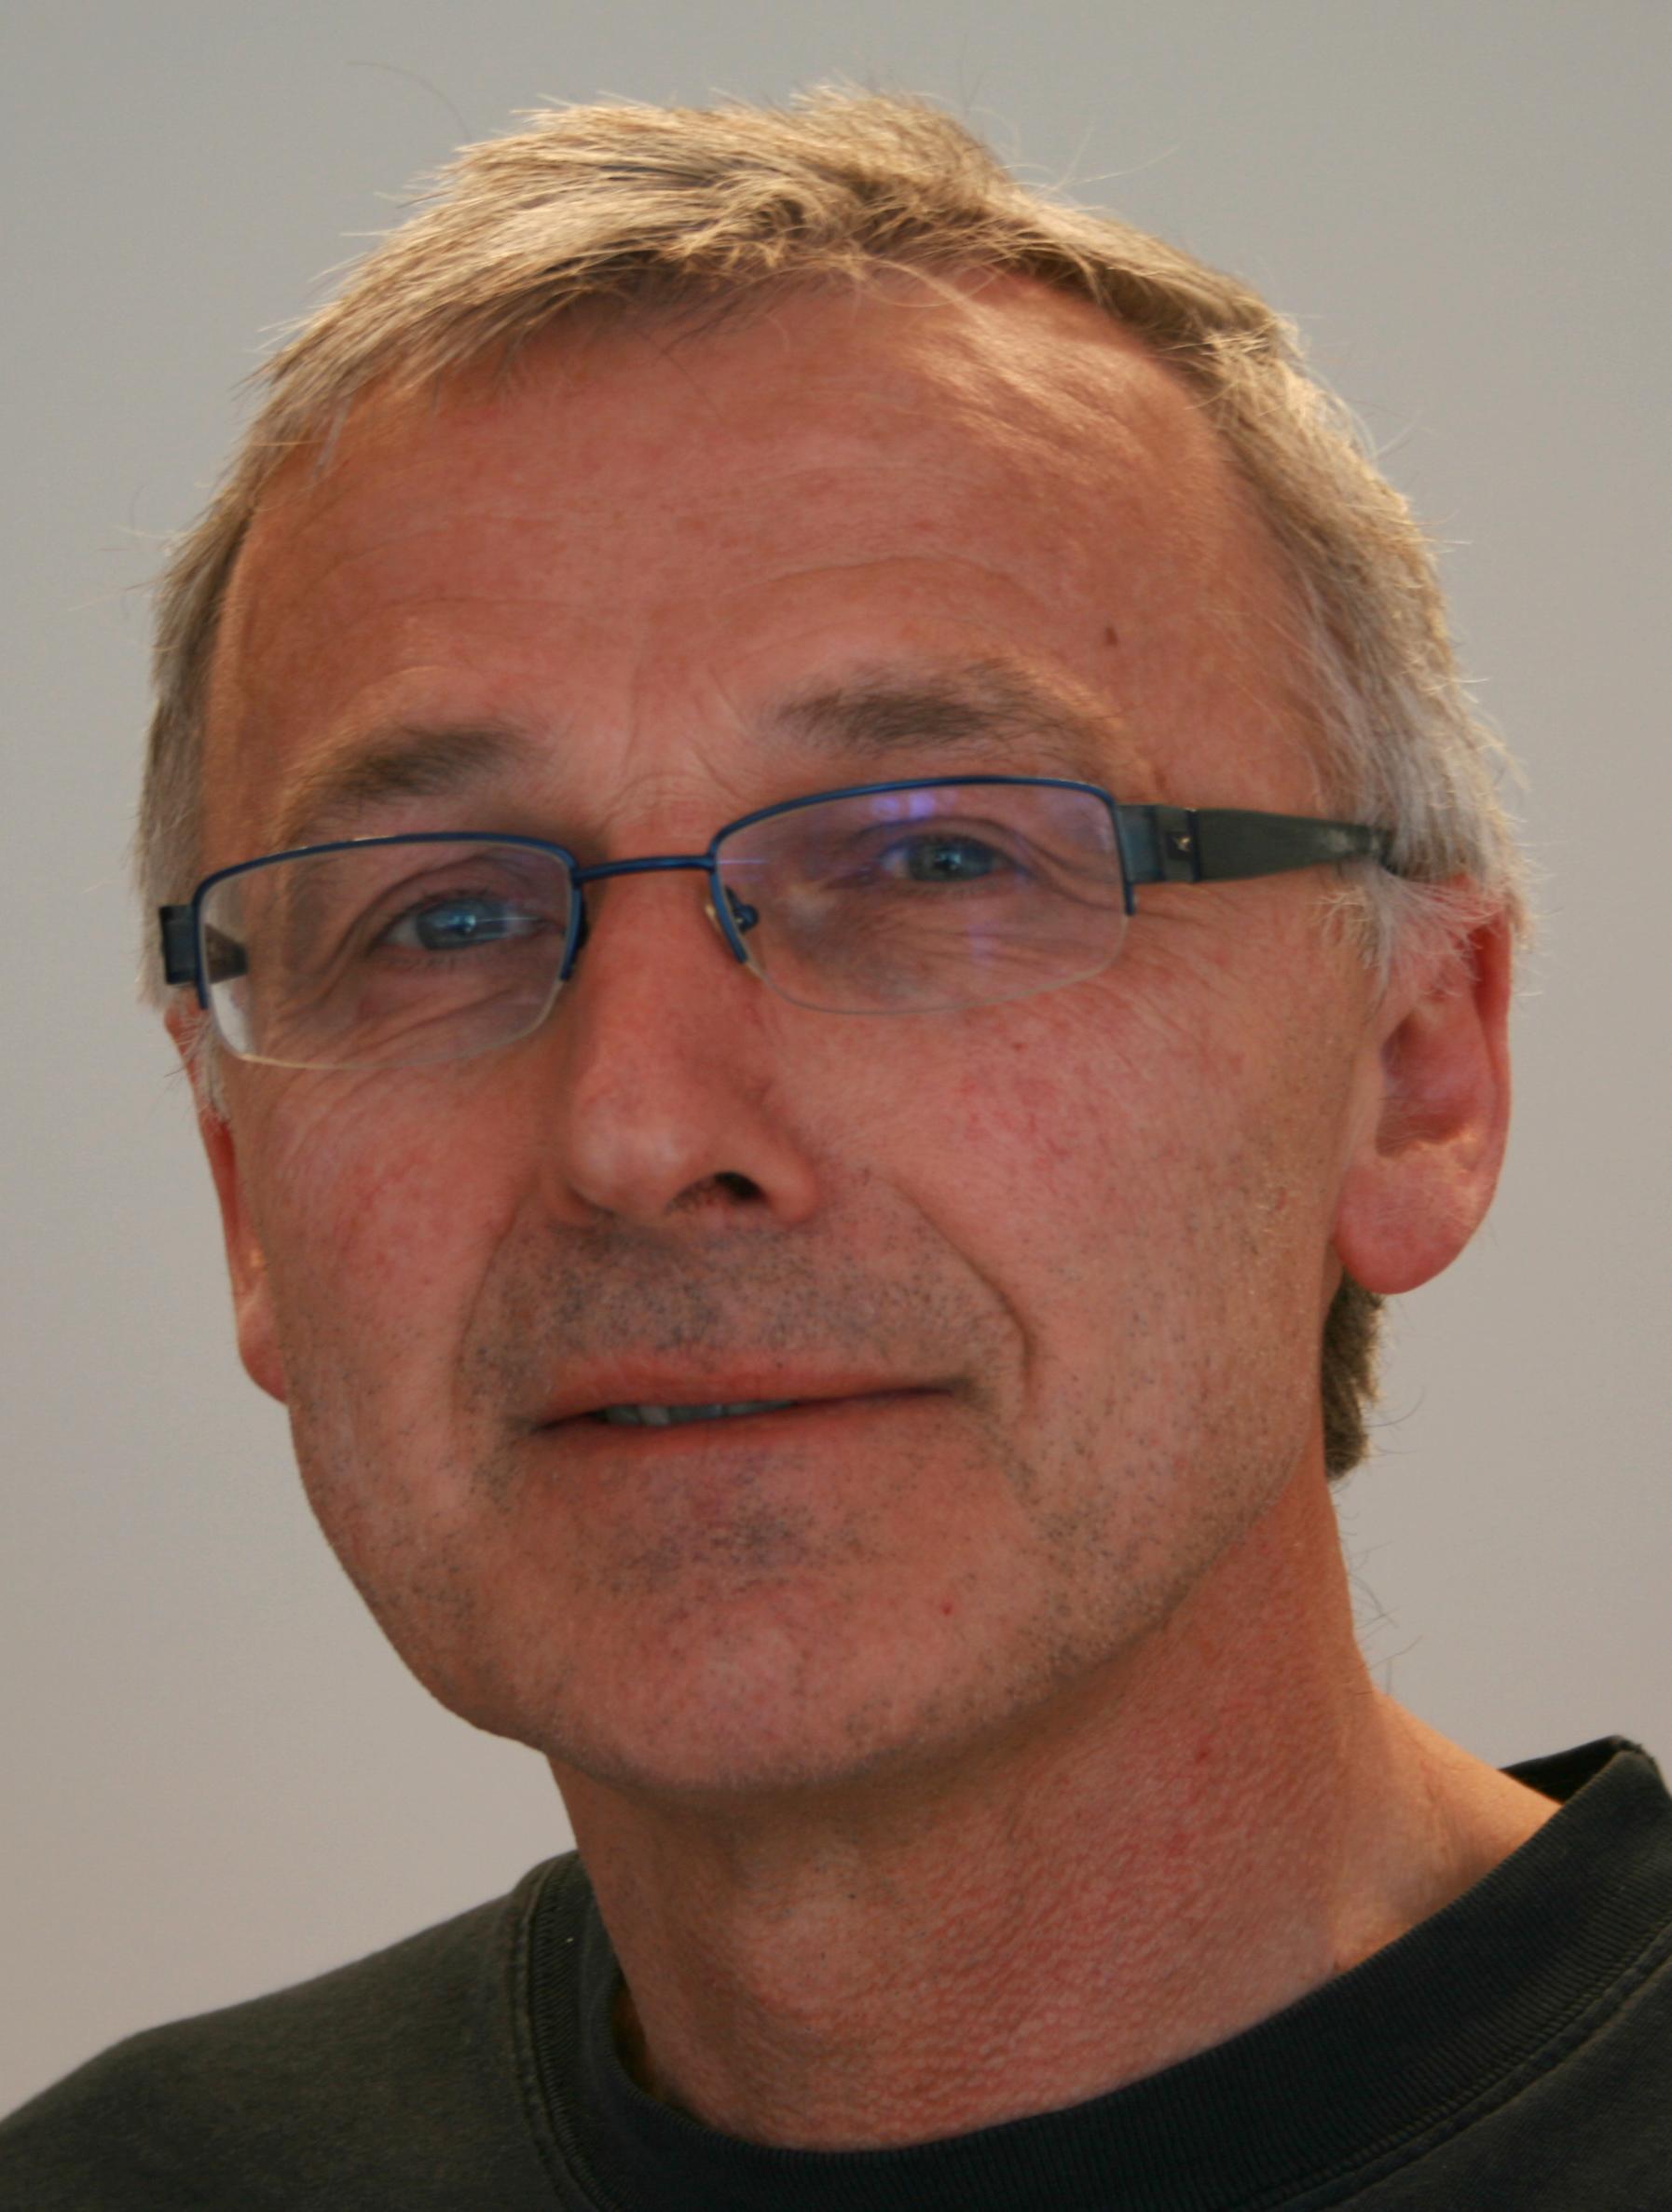 Odd Magne Harstad er professor emeritus ved NMBU (Norges miljø- og biovitenskapelige universitet).